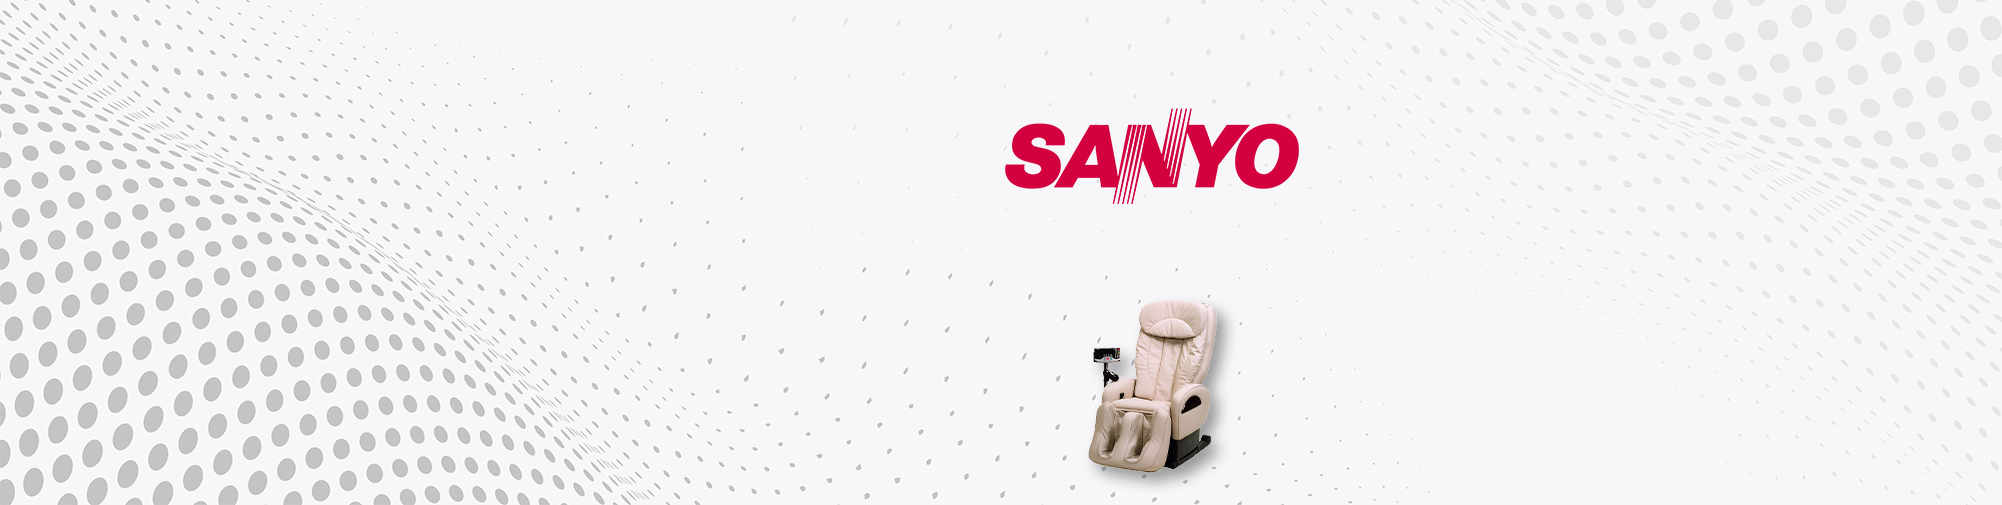 SANYO - japonská značka | Masážní křeslo World